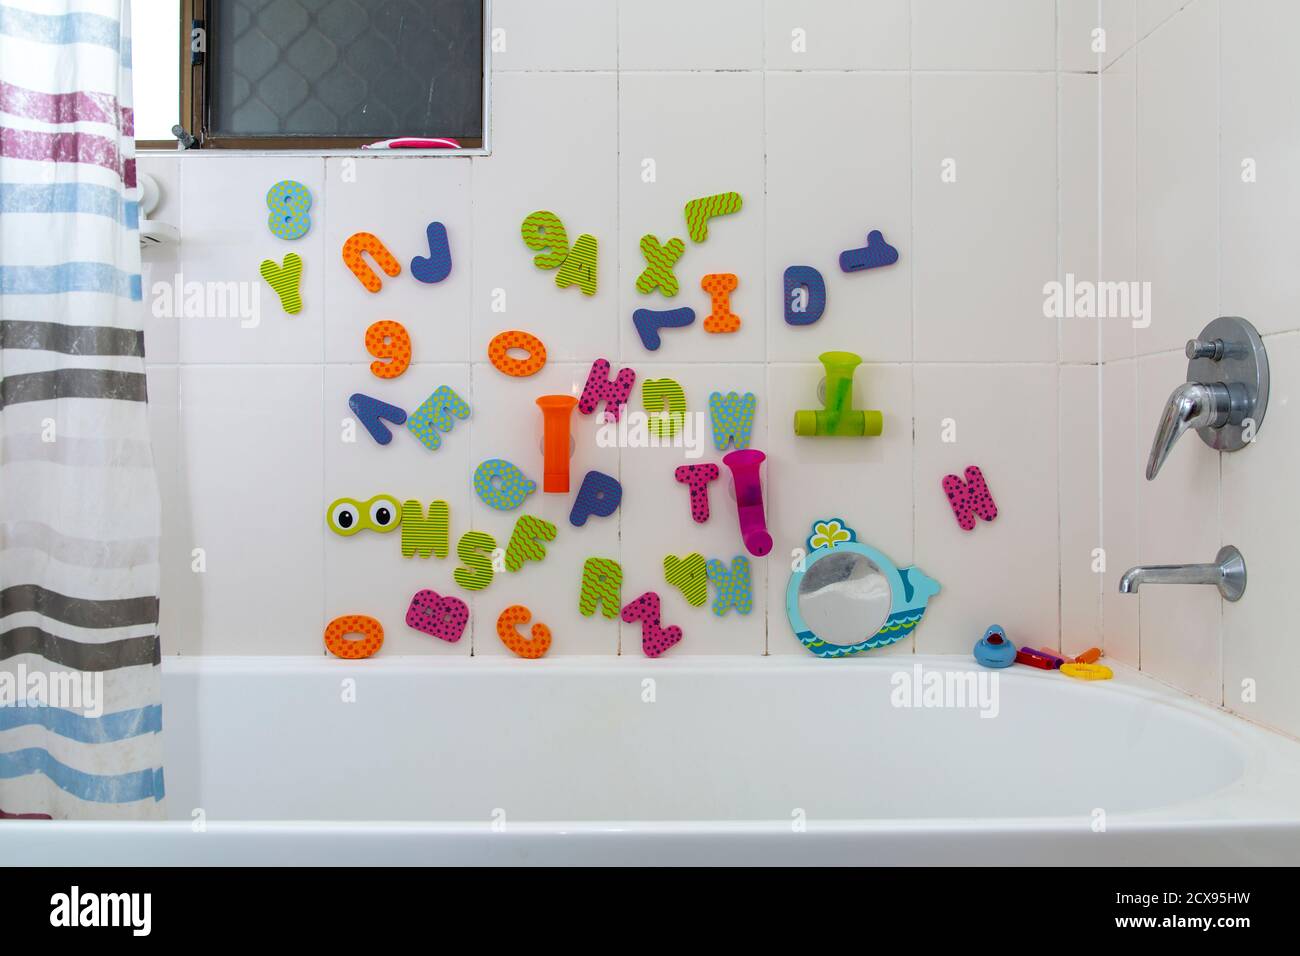 Juguetes de baño con alfabeto infantil en el baño. Foto de stock